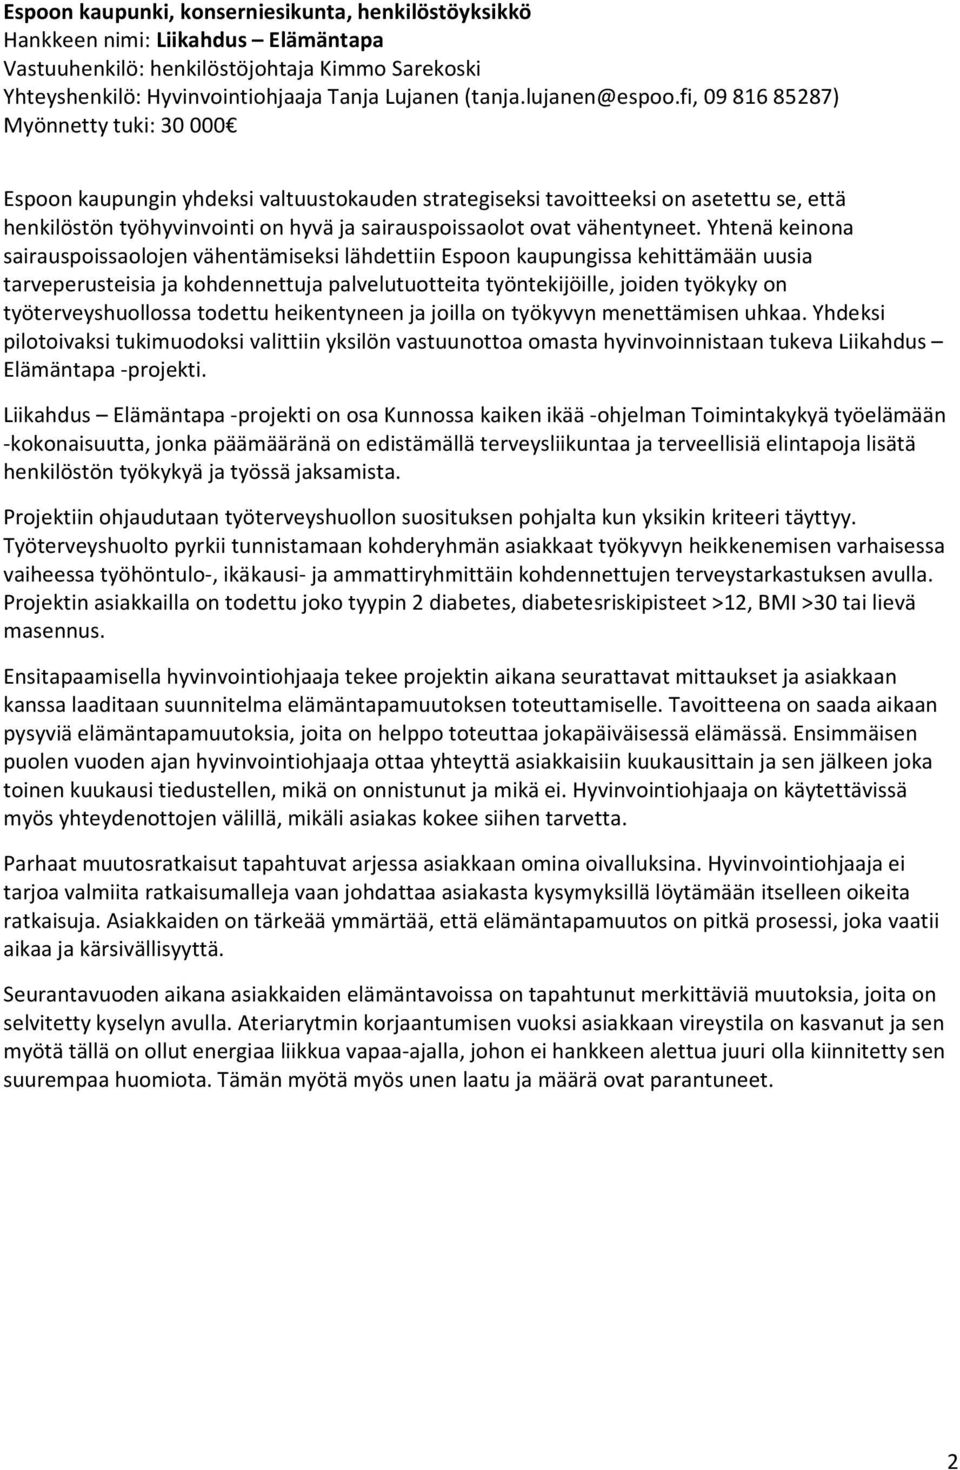 fi, 09 816 85287) Myönnetty tuki: 30 000 Espoon kaupungin yhdeksi valtuustokauden strategiseksi tavoitteeksi on asetettu se, että henkilöstön työhyvinvointi on hyvä ja sairauspoissaolot ovat